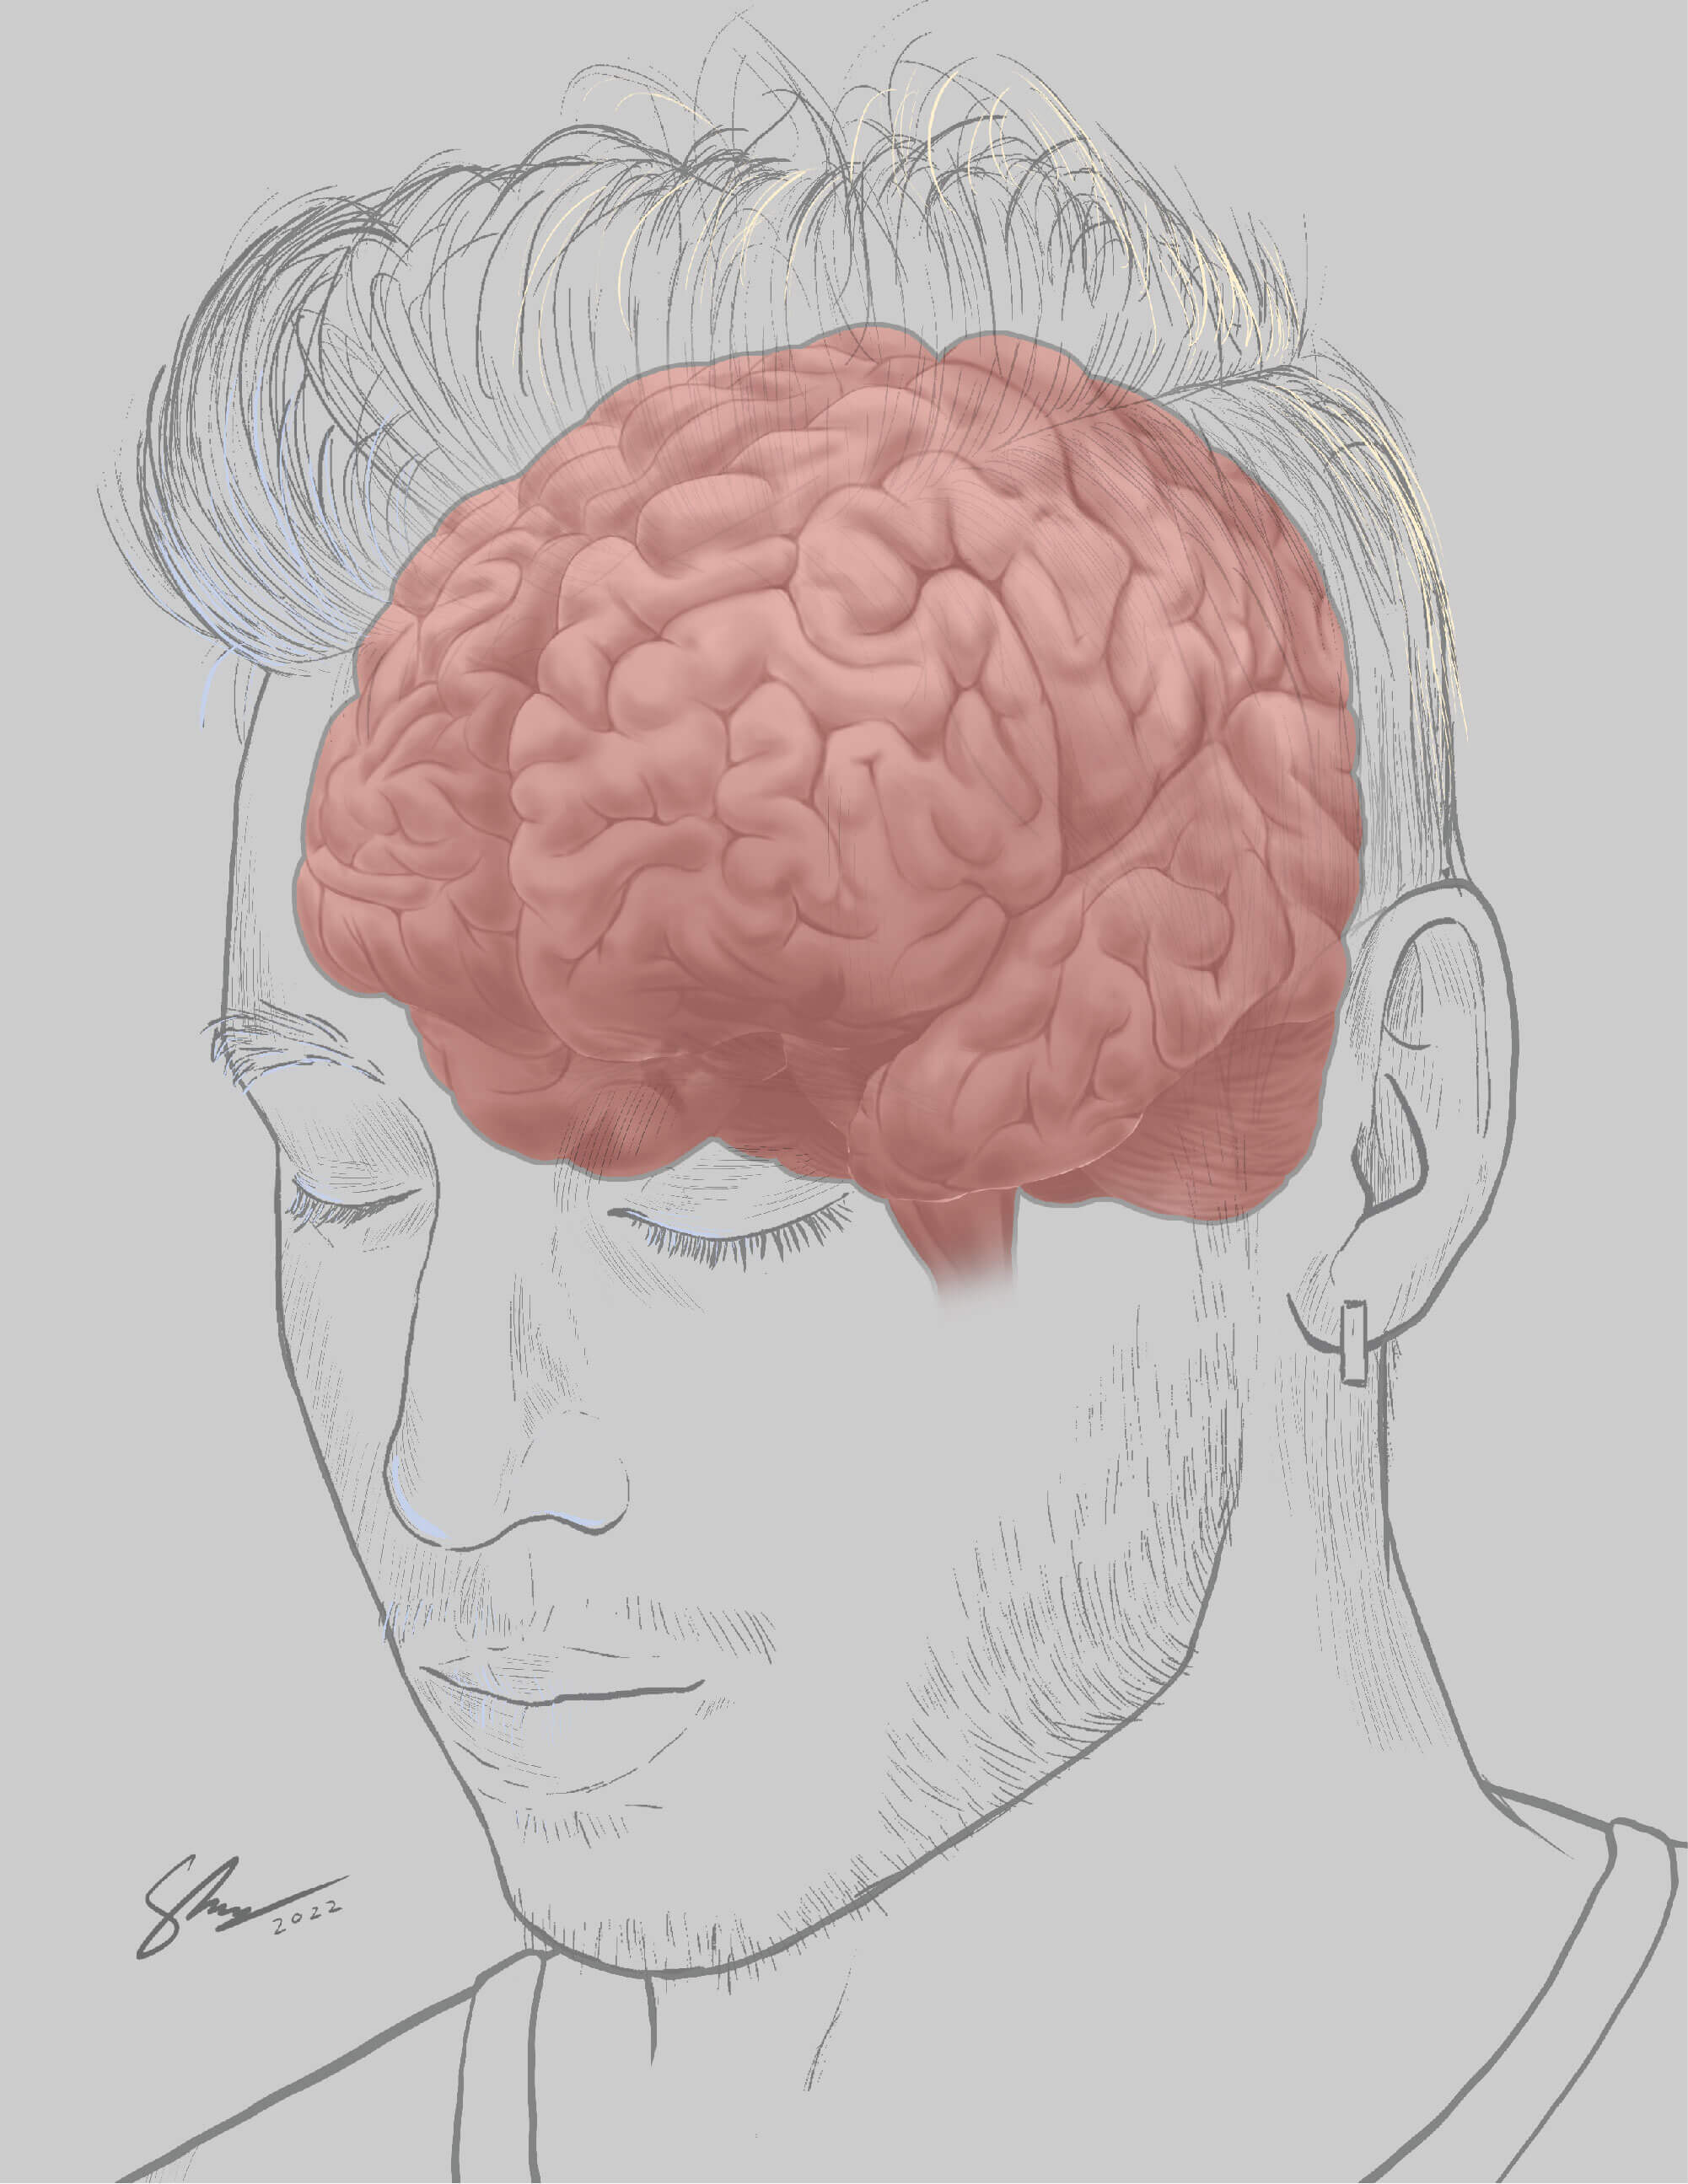 Brain rendering progress 2 - gyri basic shading